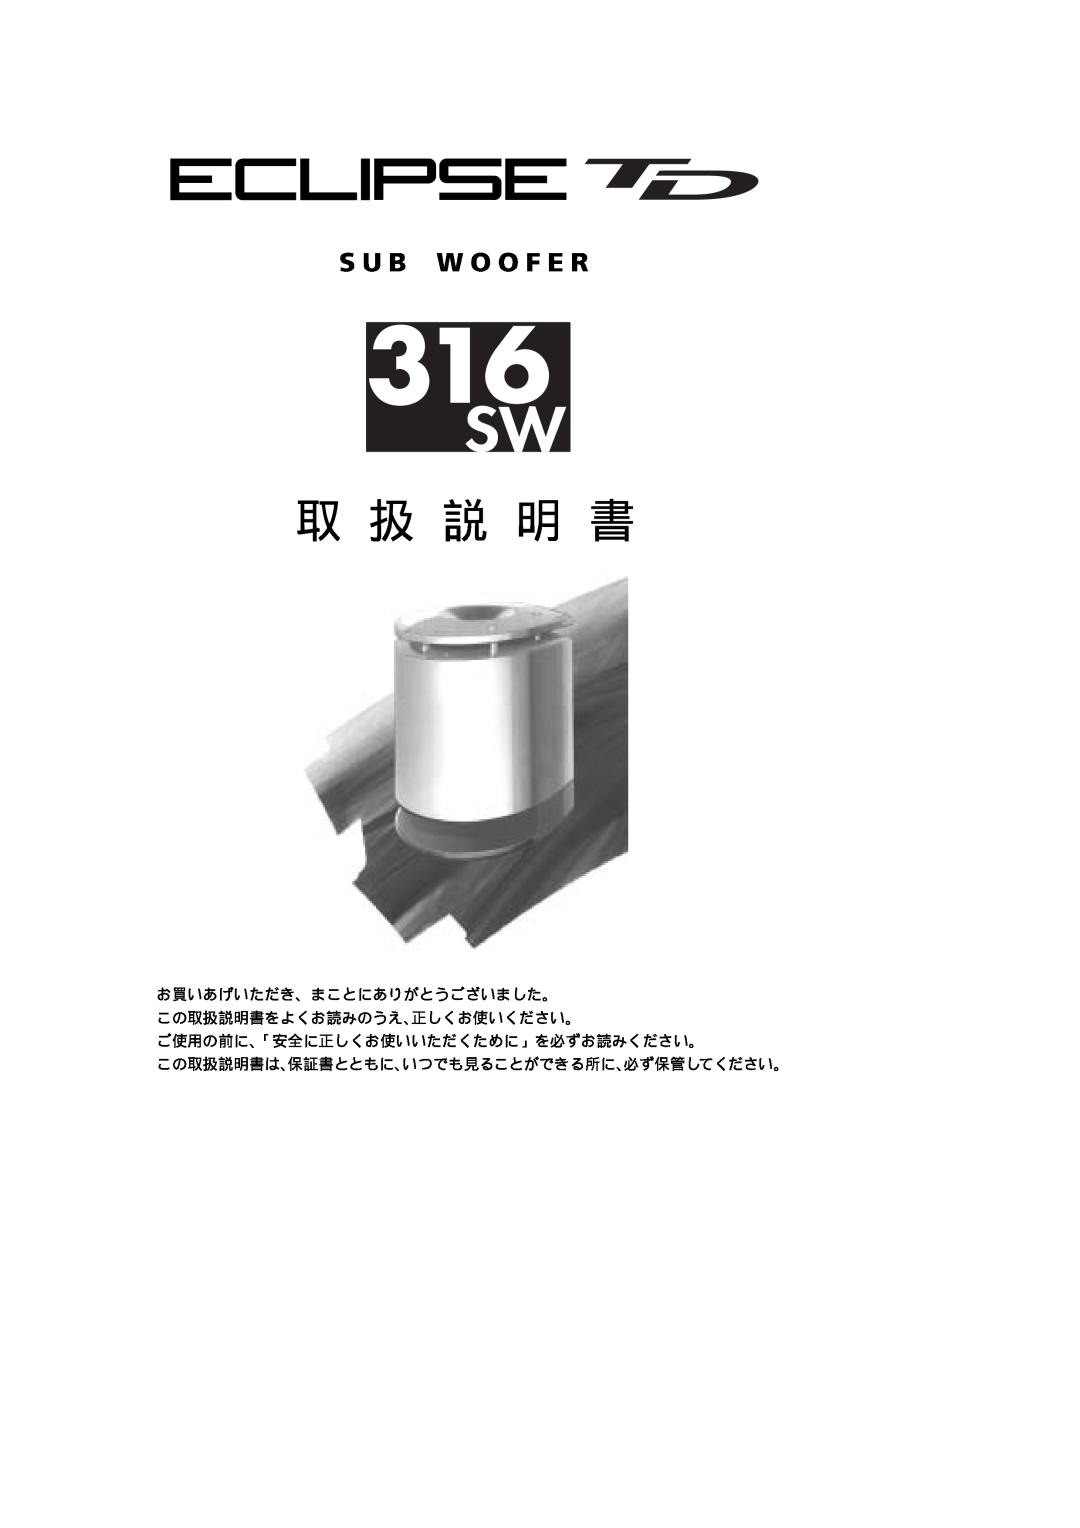 Fujitsu 316SW manual 取 扱 説 明 書, ご使用の前に､「安全に正しくお使いいただくために」を必ずお読みください。, この取扱説明書は､保証書とともに､いつでも見ることができる所に､必ず保管してください。 